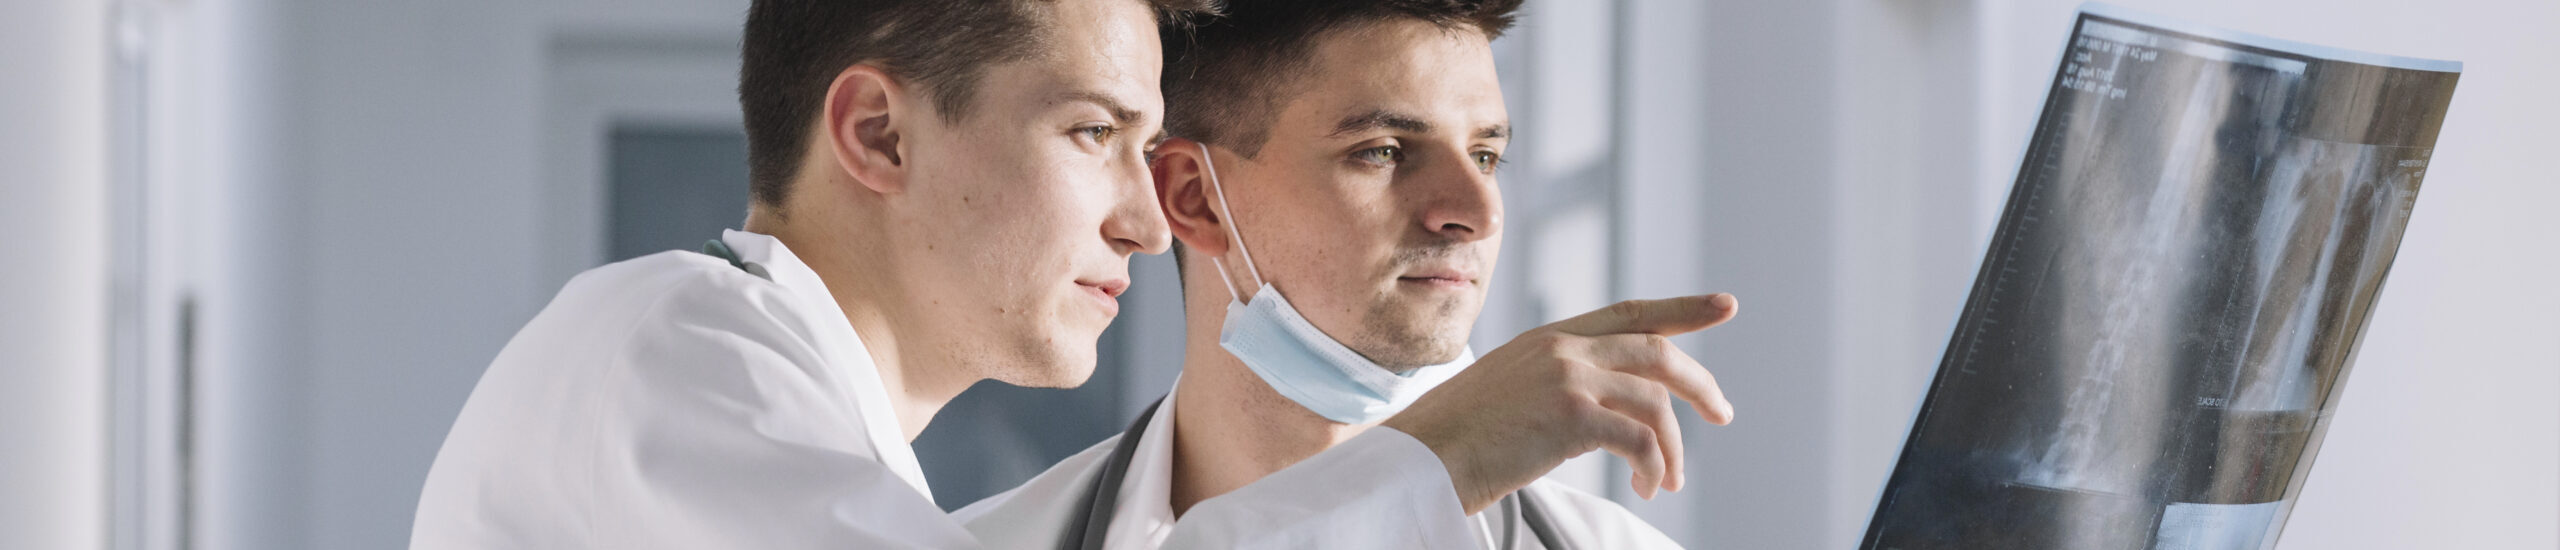 Dos profesionales de la salud, uno con cubrebocas en la barbilla, amos con bata analizando una radiografía en consultorio